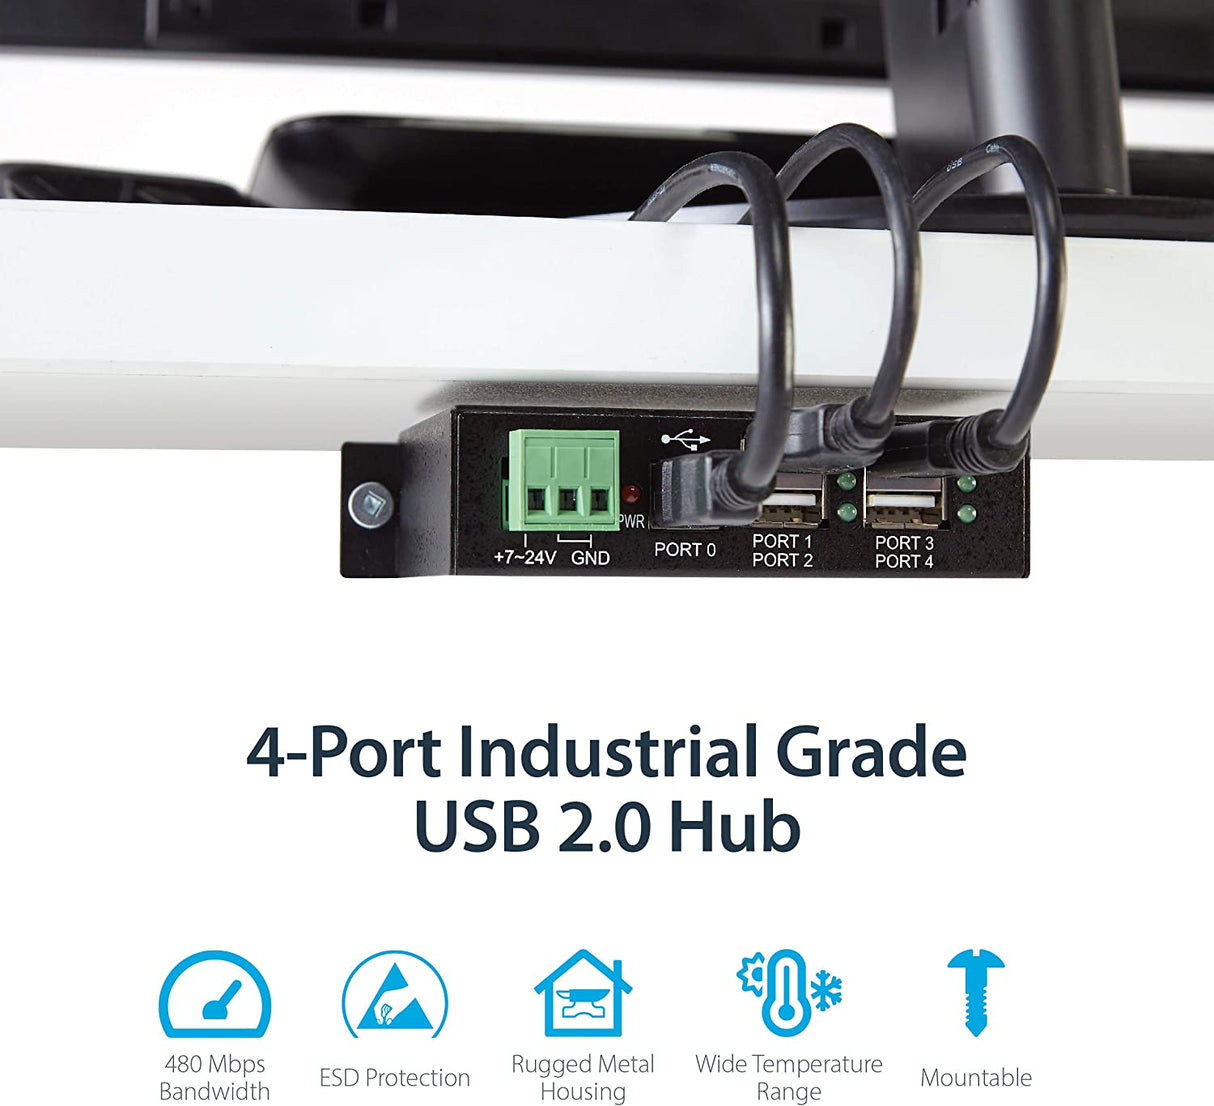 StarTech.com 4-Port USB 2.0 Hub - Metal Industrial USB-A Hub - Din Rail, Wall or Desk Mountable USB Data Hub - TAA Compliant USB Expander Hub (ST4200USBM)